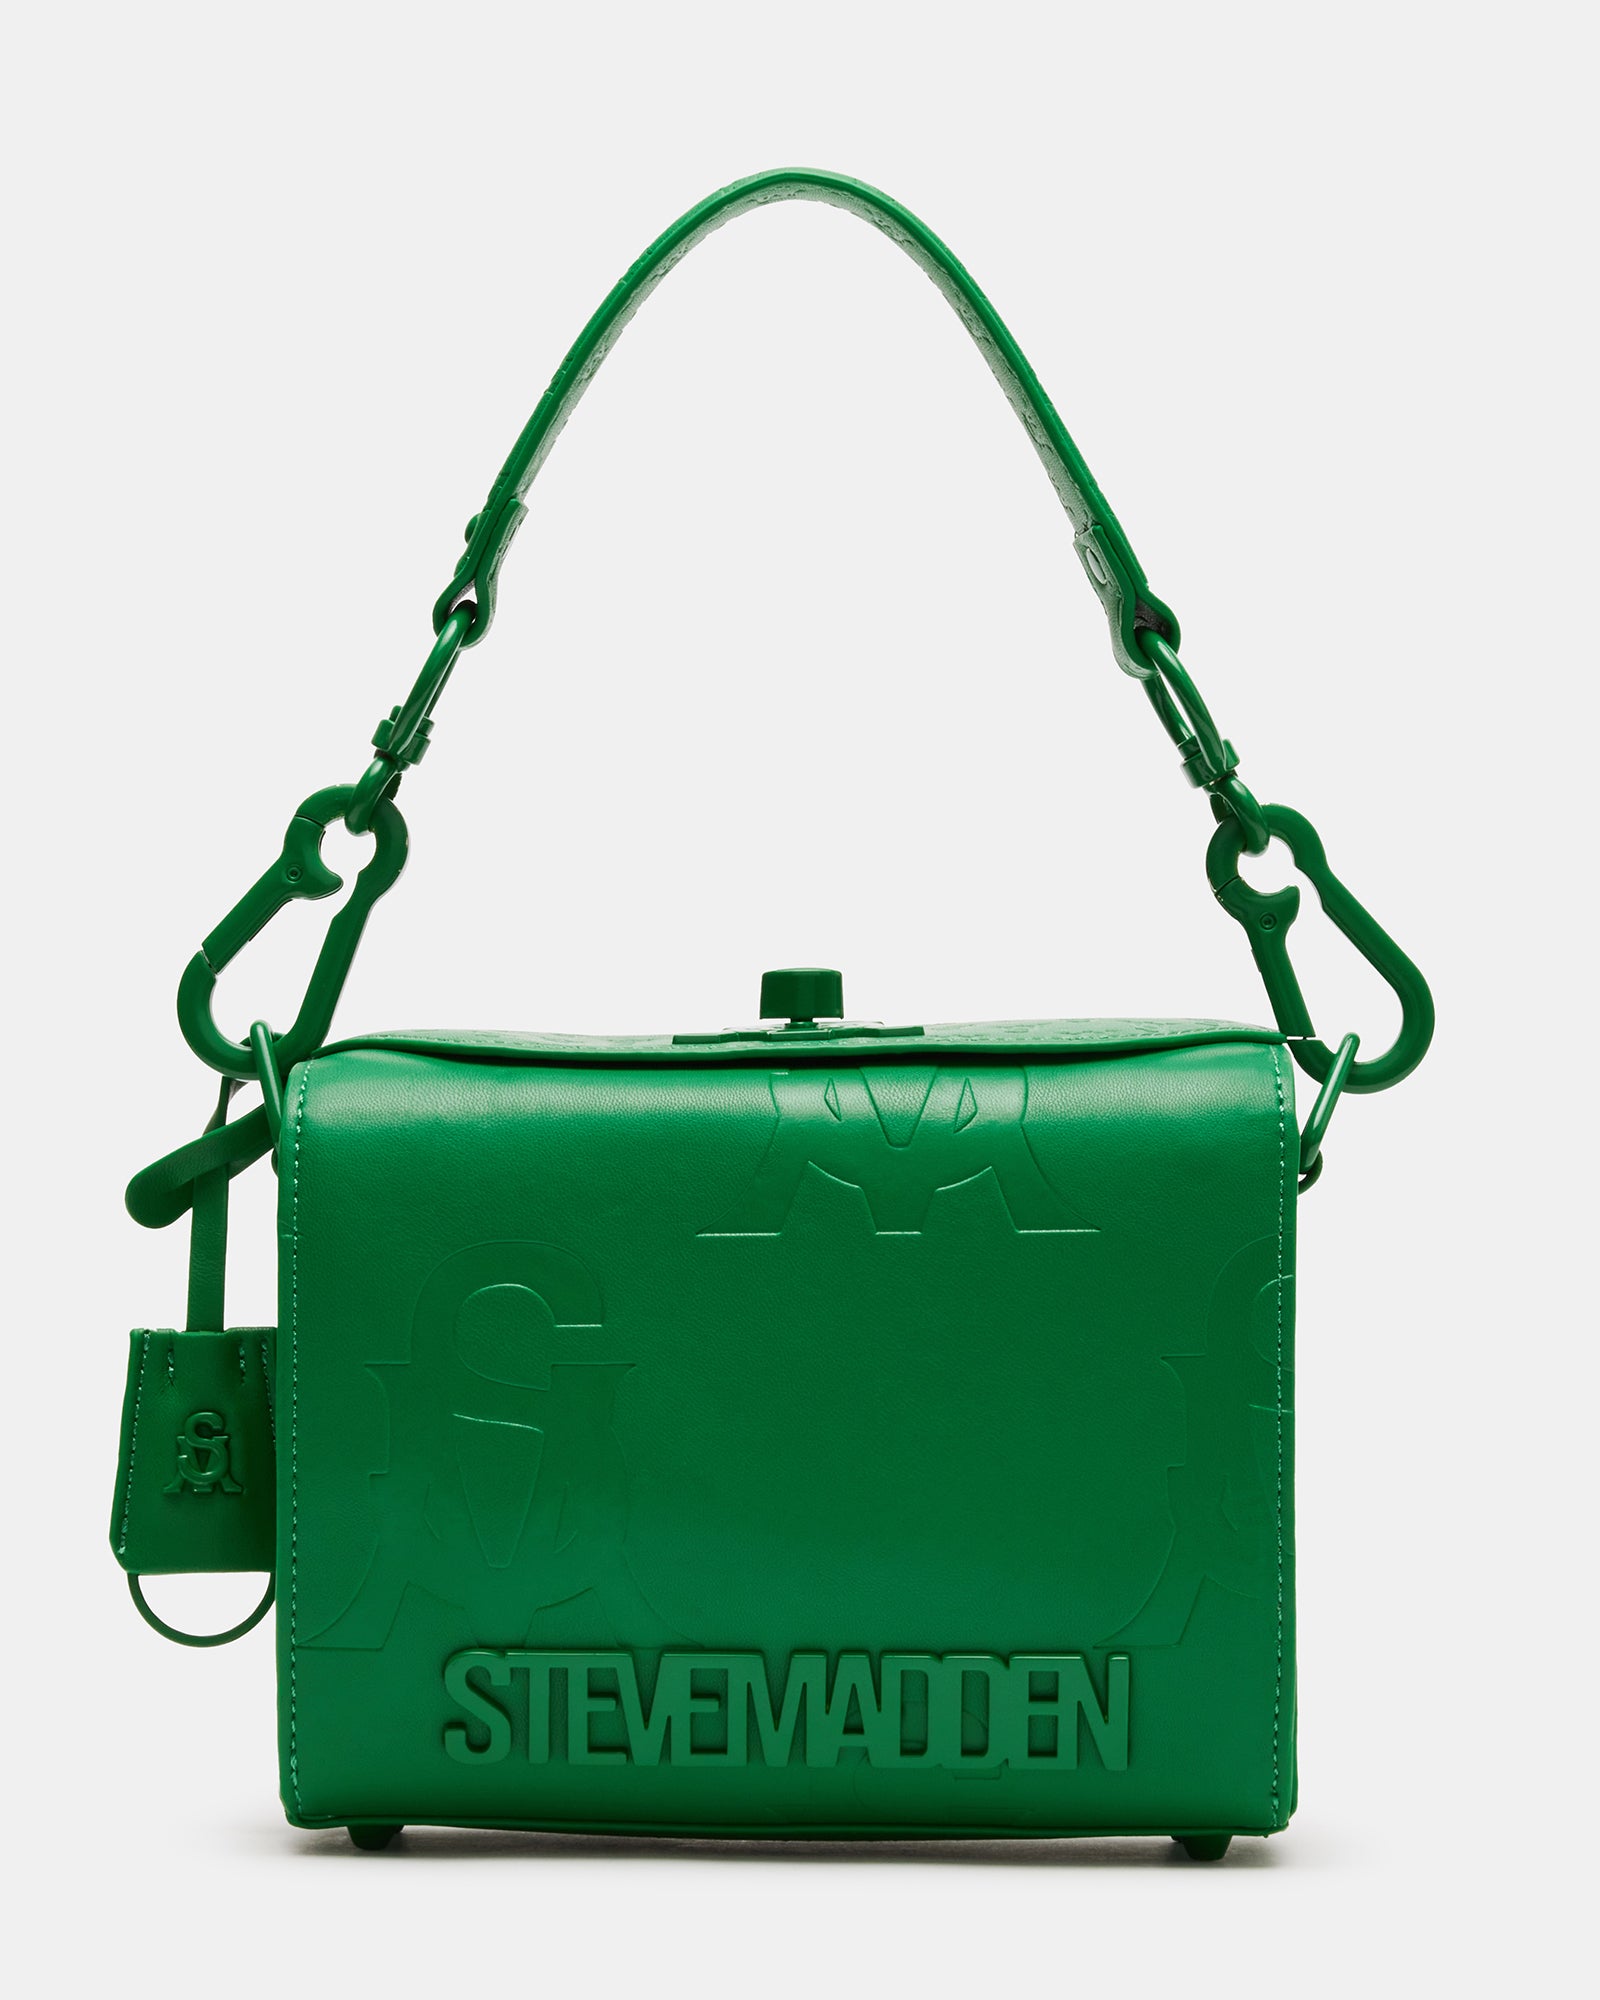 Steve Madden logo orange and tan strap crossbody  White crossbody bag,  Steve madden handbags, Black cross body bag